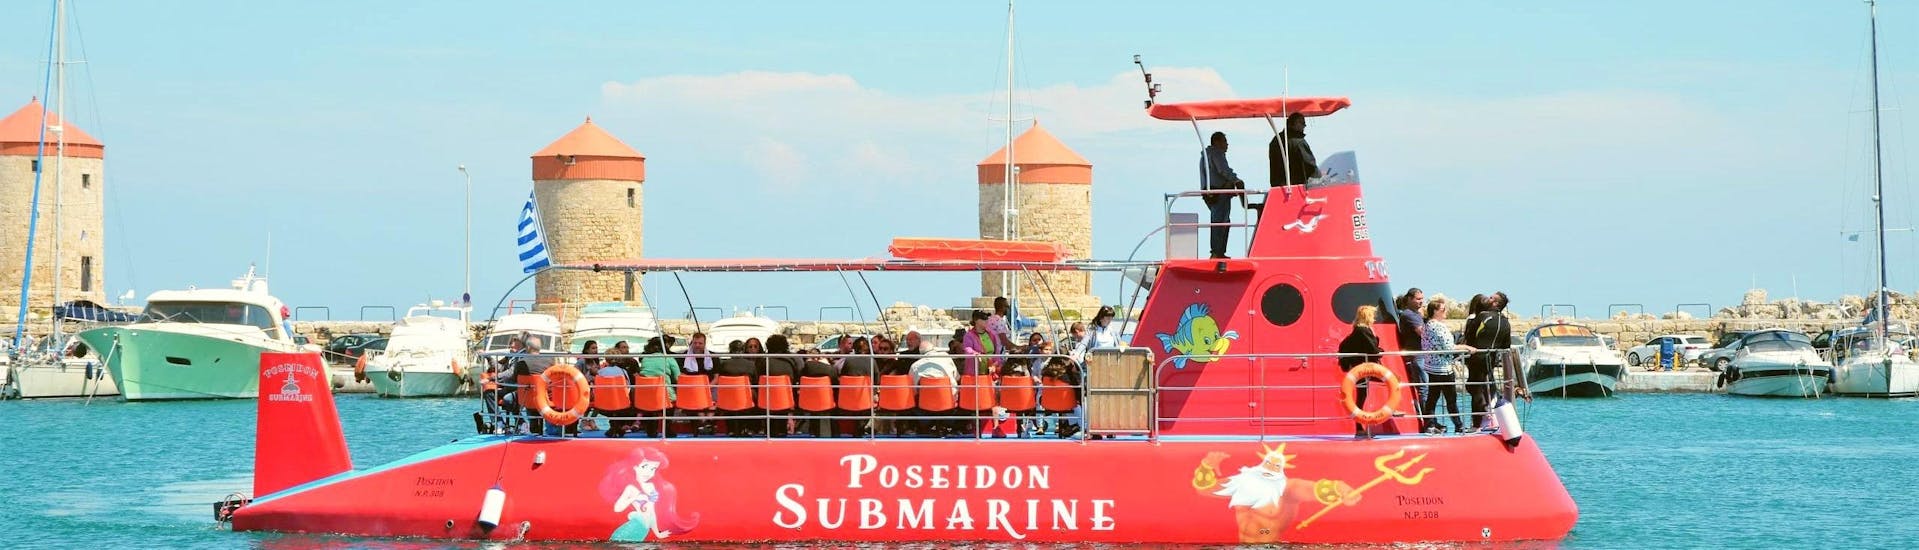 Das Halb-U-Boot von Poseidon Submarine Rhodos verlässt den Hafen von Mandraki.